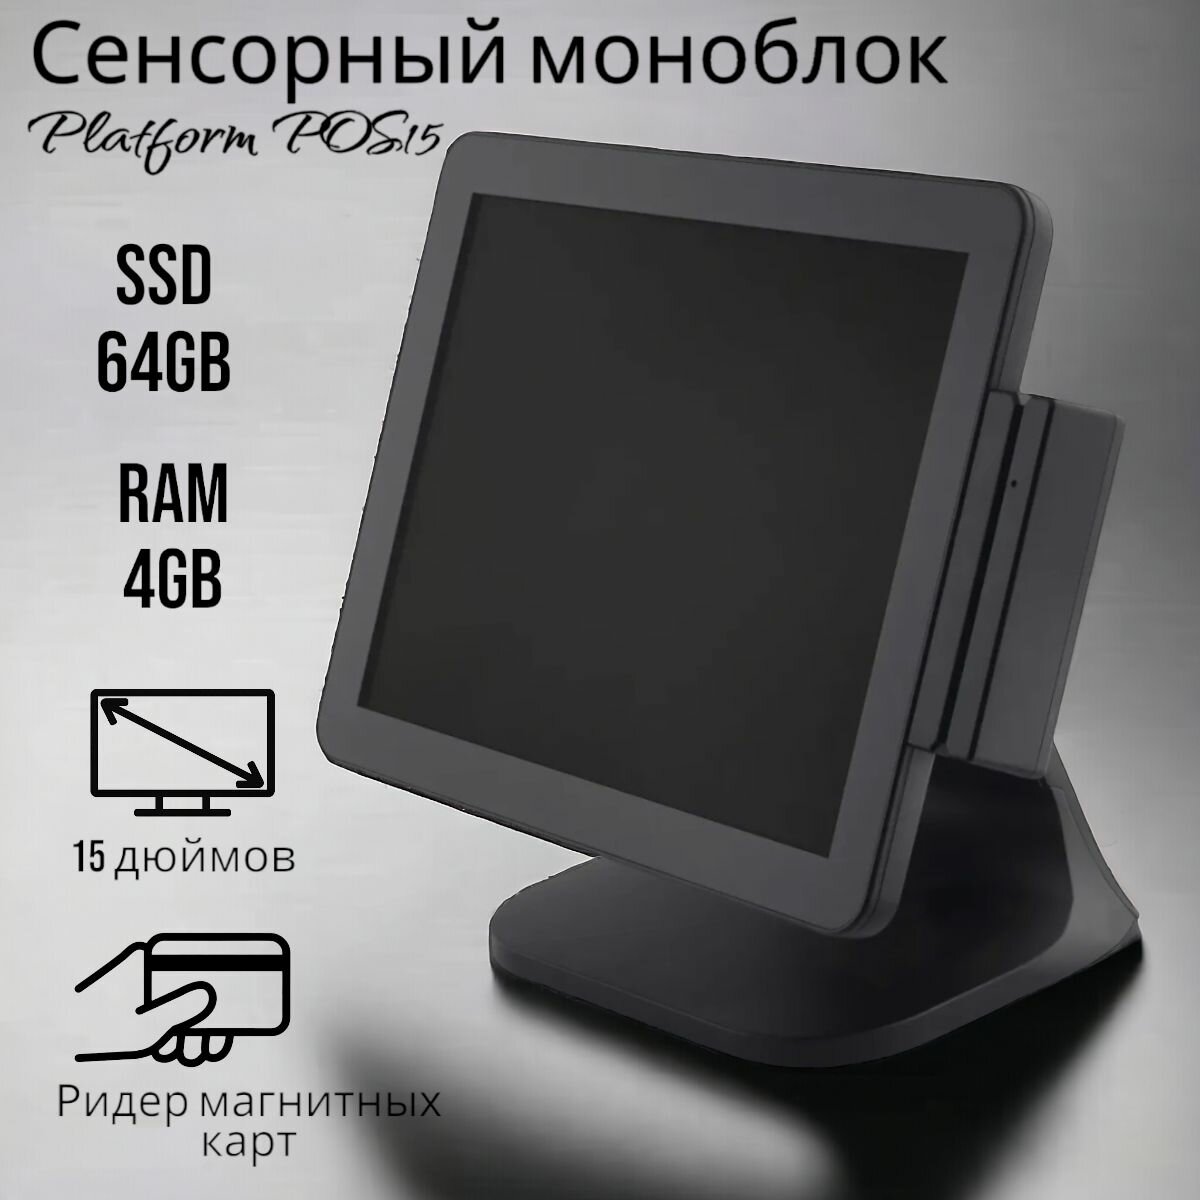 Сенсорный моноблок Platform POS15 (Celeron J3455, RAM 4 ГБ, SSD 64 ГБ, Intel UHD Graphics, Windows), черный, русская раскладка